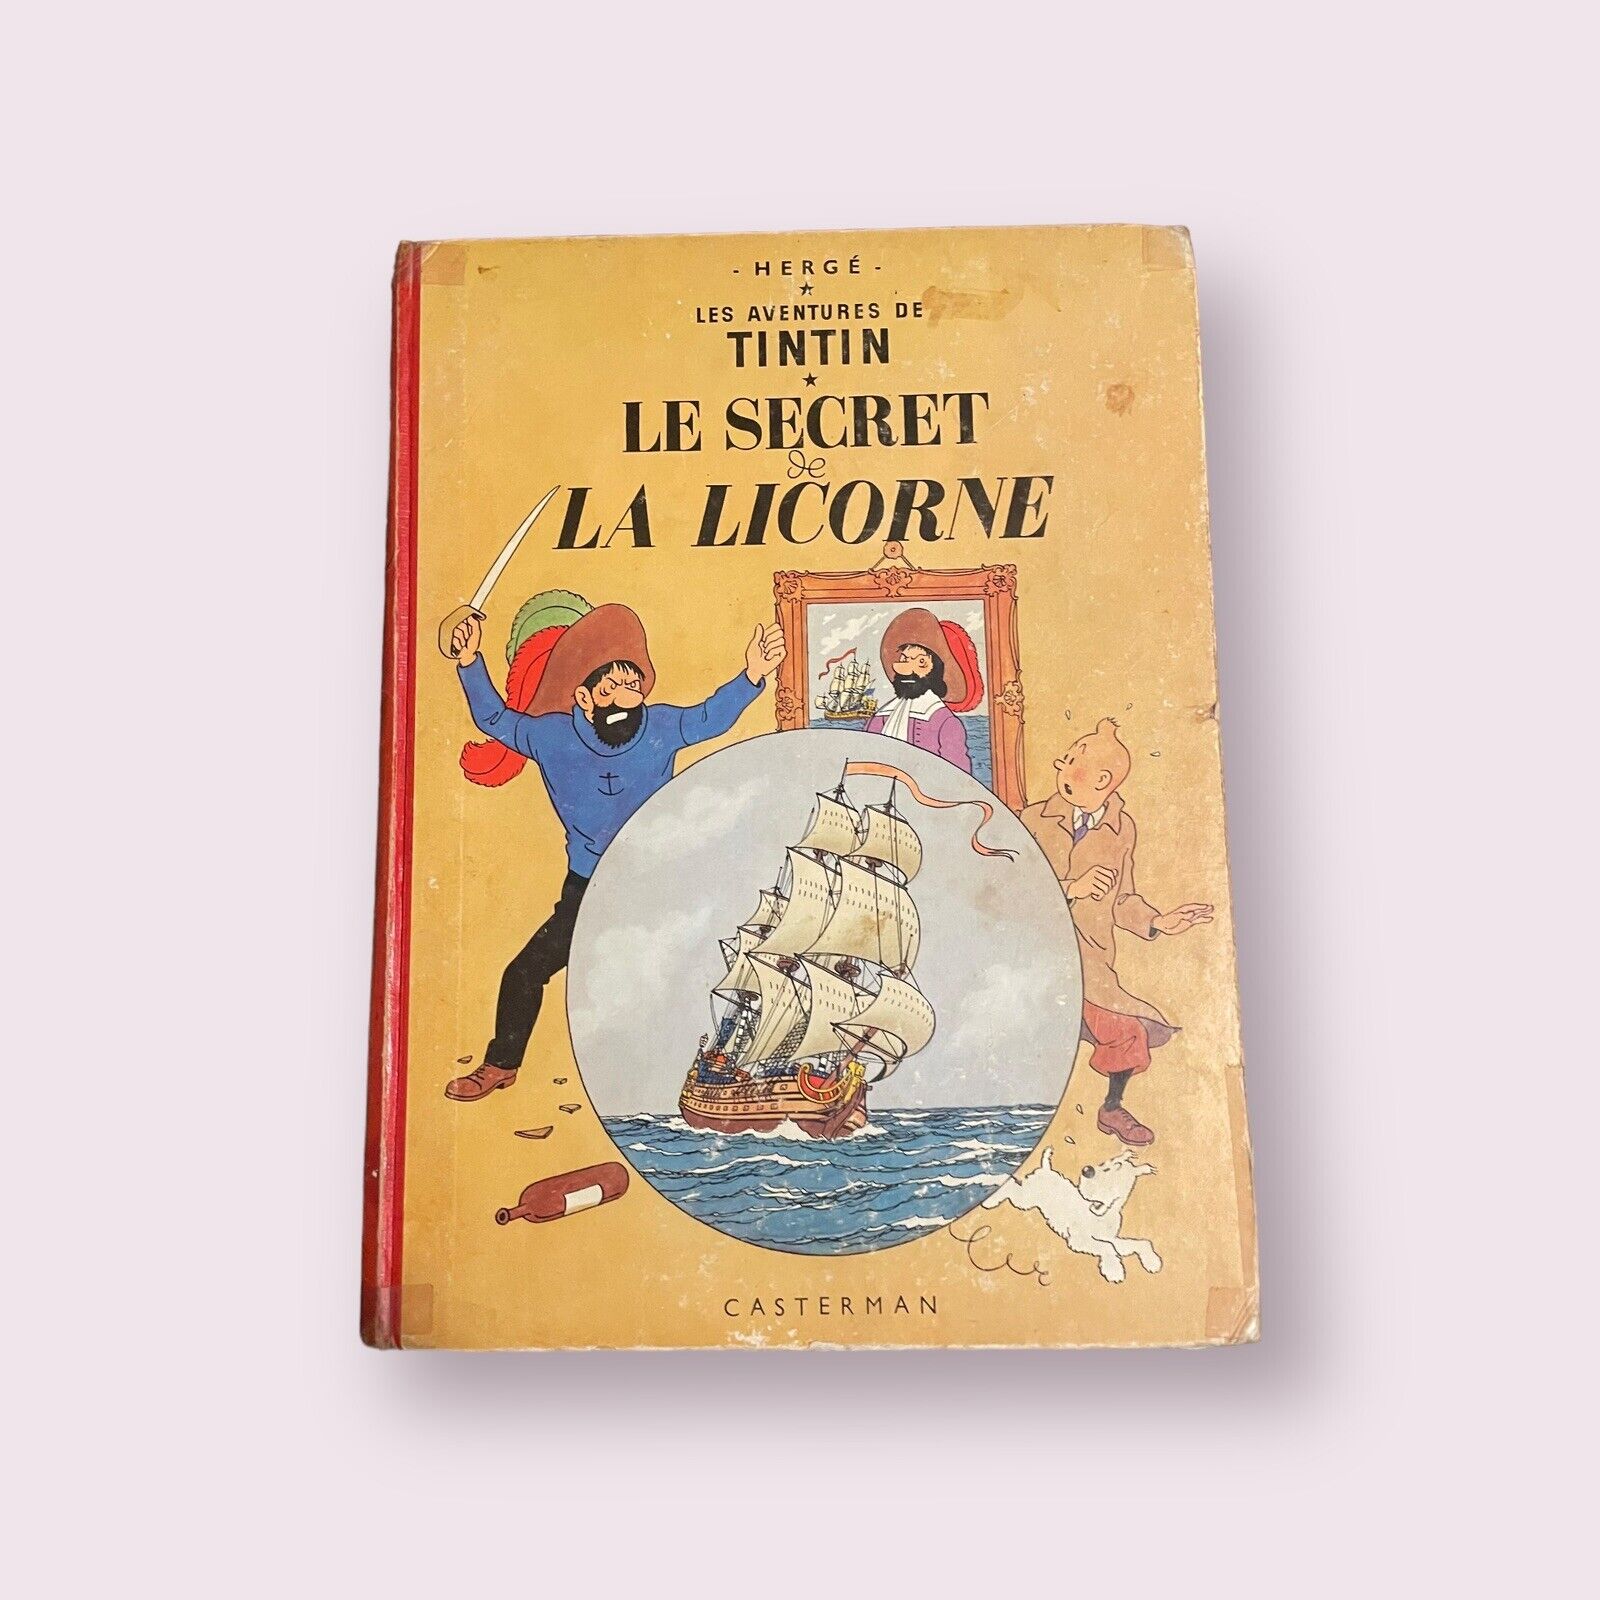 LES AVENTURES DE TINTIN Le Secret de La Licorne HERGE CASTERMAN 1960s? FRENCH